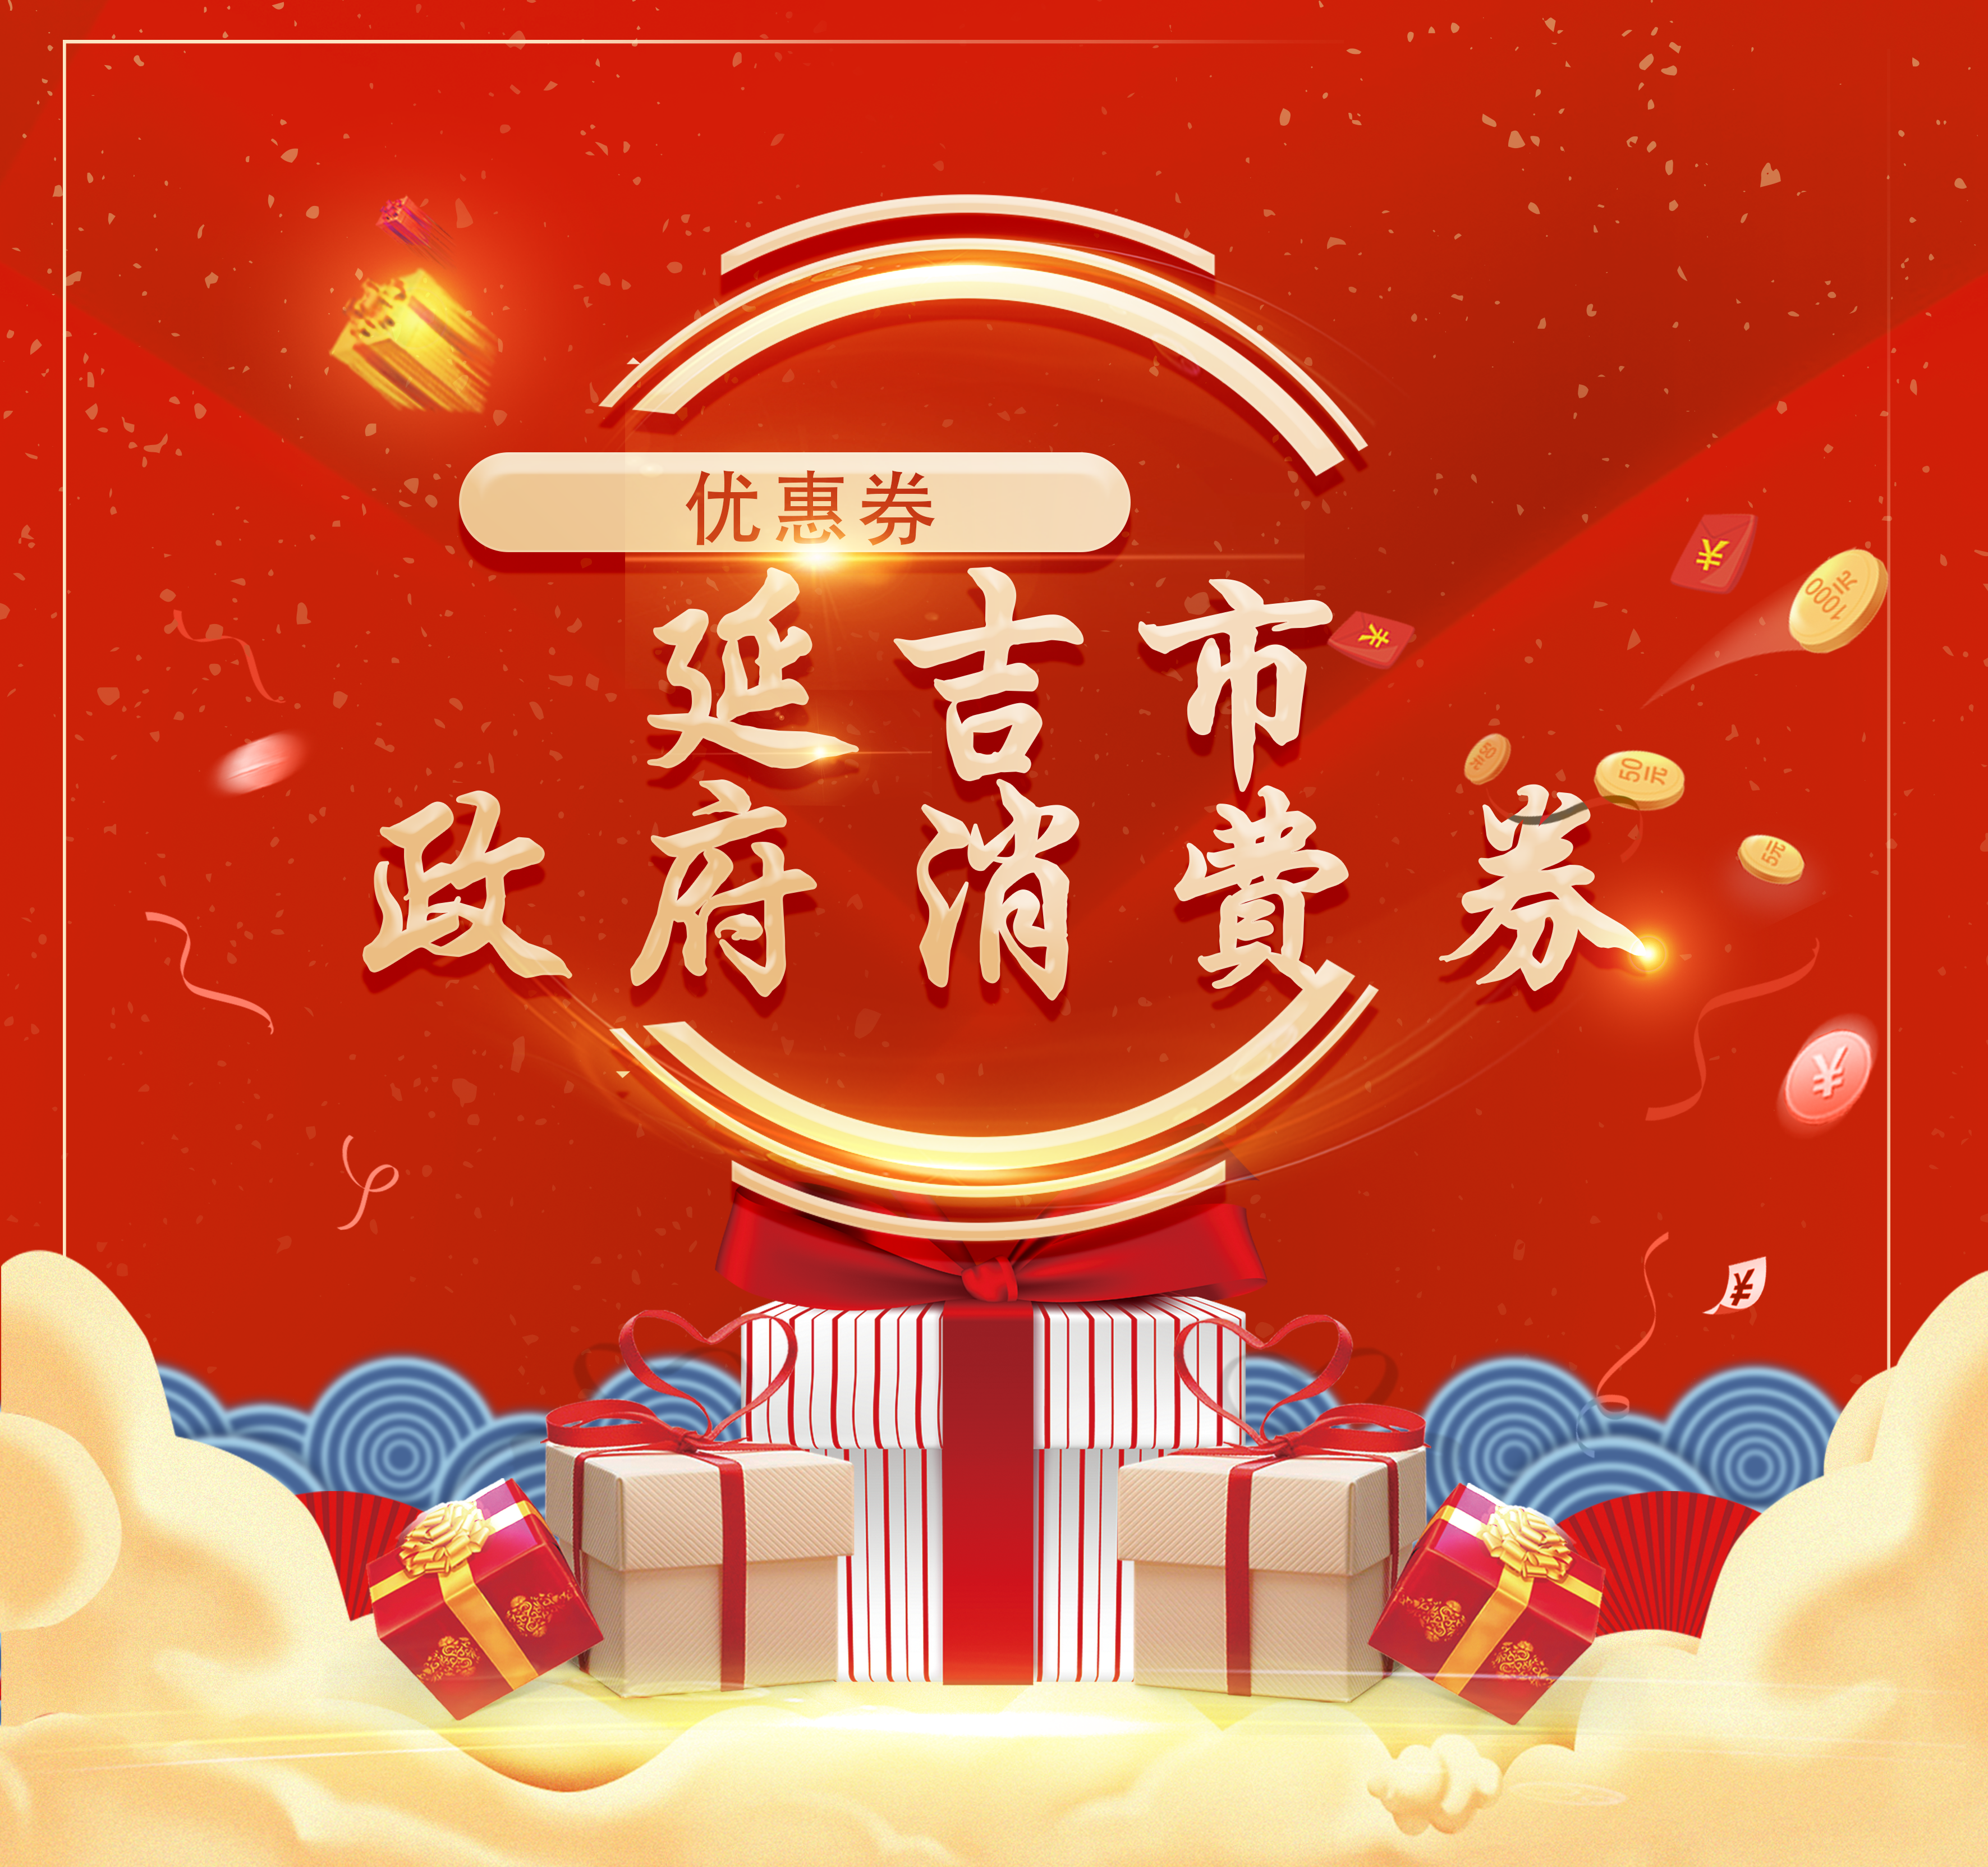 延吉市“1•8消费节嗨购吉祥年”第二轮线上消费券将于1月27日发放